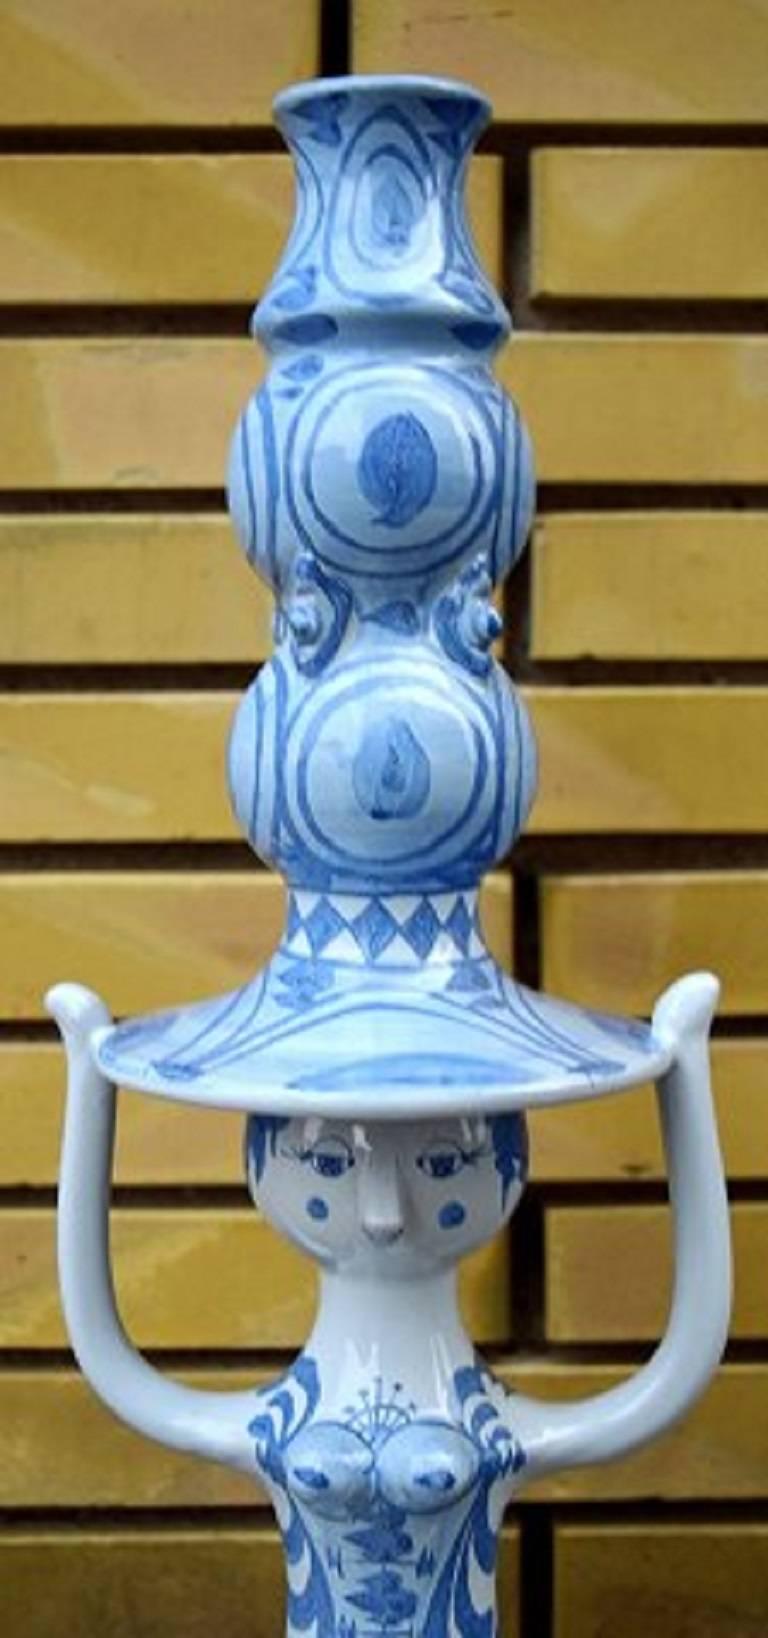 Scandinavian Modern Colossal Bjorn Wiinblad Figure, Candlestick L15, the Blue House, 1974